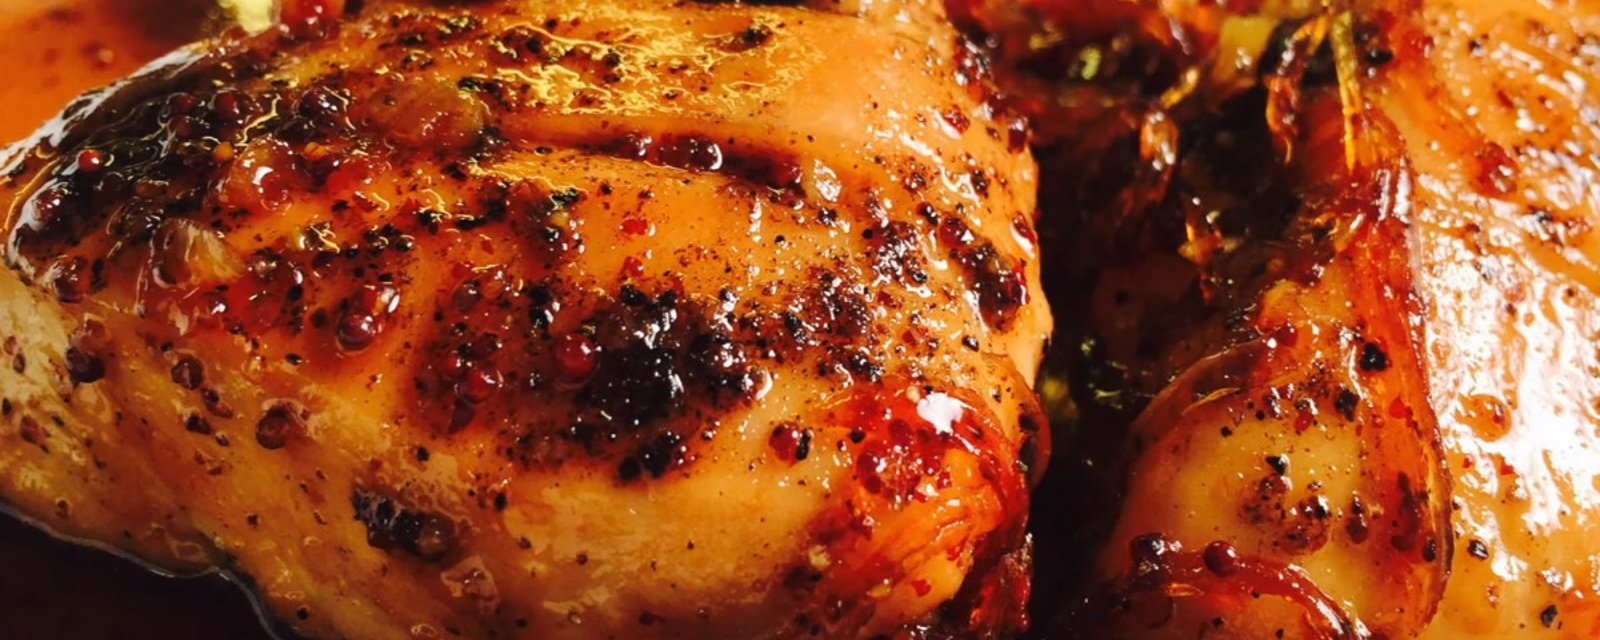 C'est officiellement la saison du barbecue! Mariner votre poulet n'aura jamais été aussi facile! 